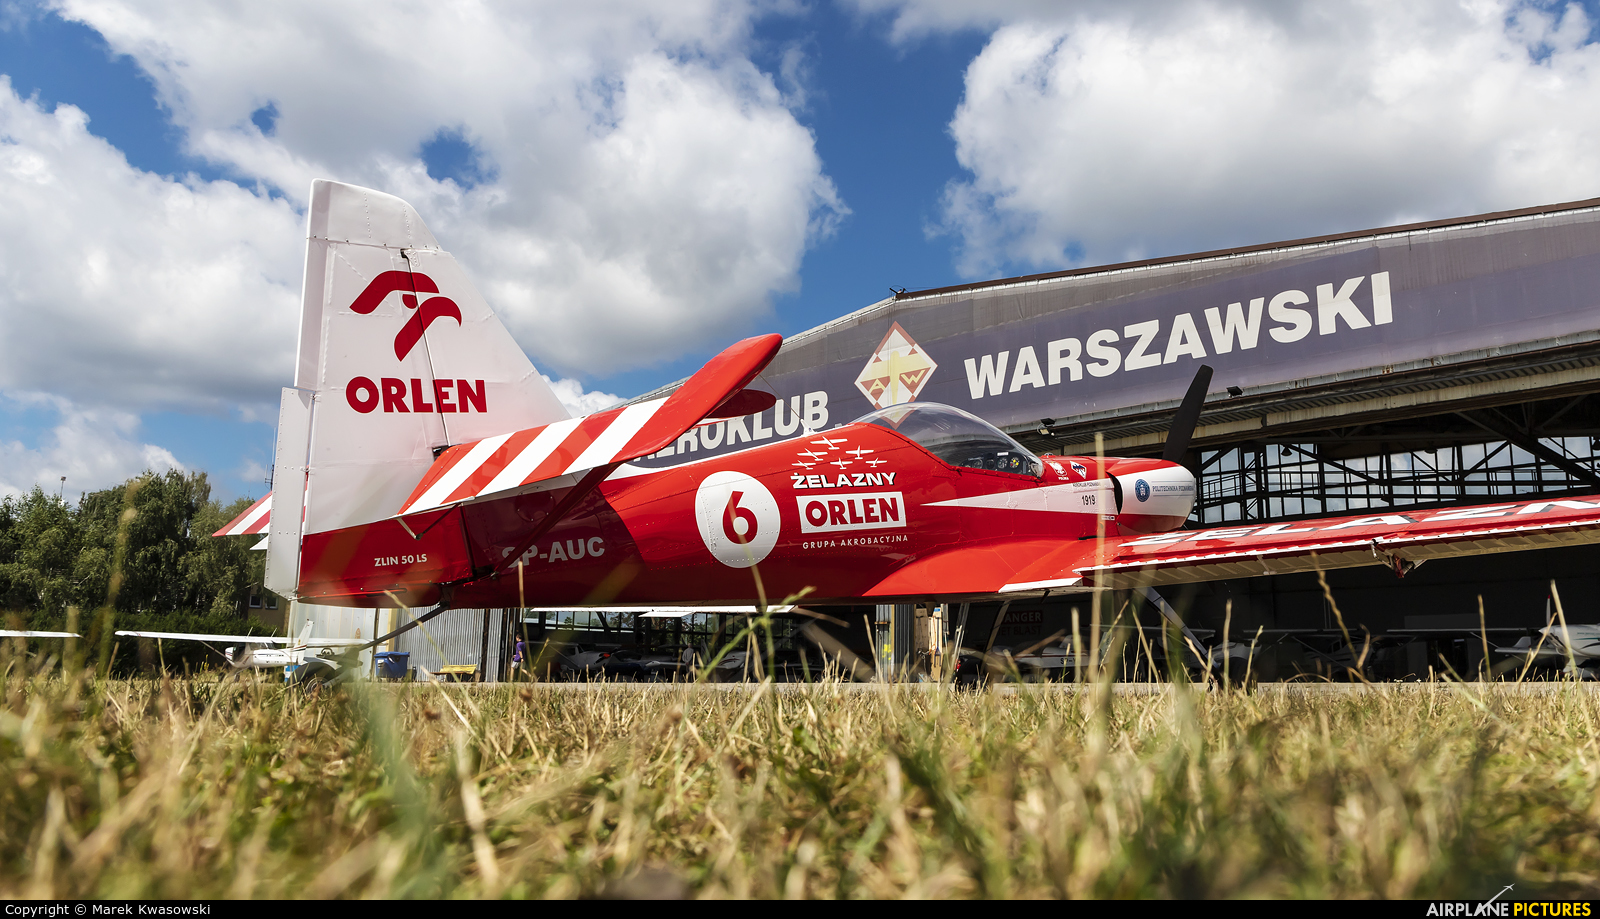 Grupa Akrobacyjna Żelazny - Acrobatic Group SP-AUC aircraft at Warsaw - Babice